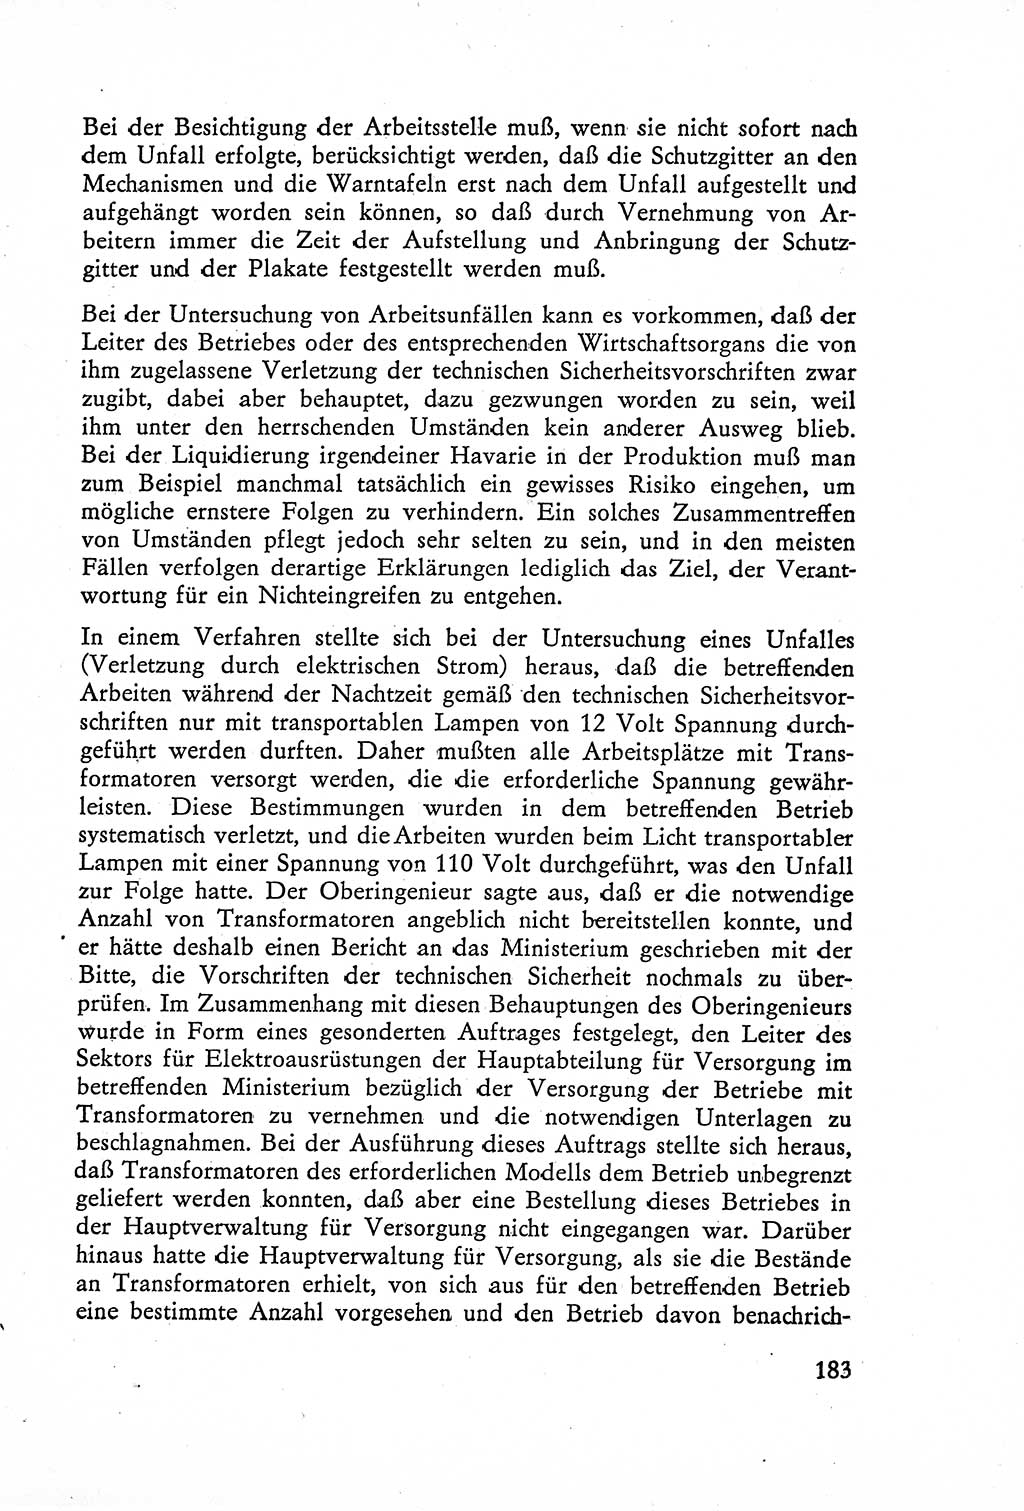 Die Untersuchung einzelner Verbrechensarten [Deutsche Demokratische Republik (DDR)] 1960, Seite 183 (Unters. Verbr.-Art. DDR 1960, S. 183)